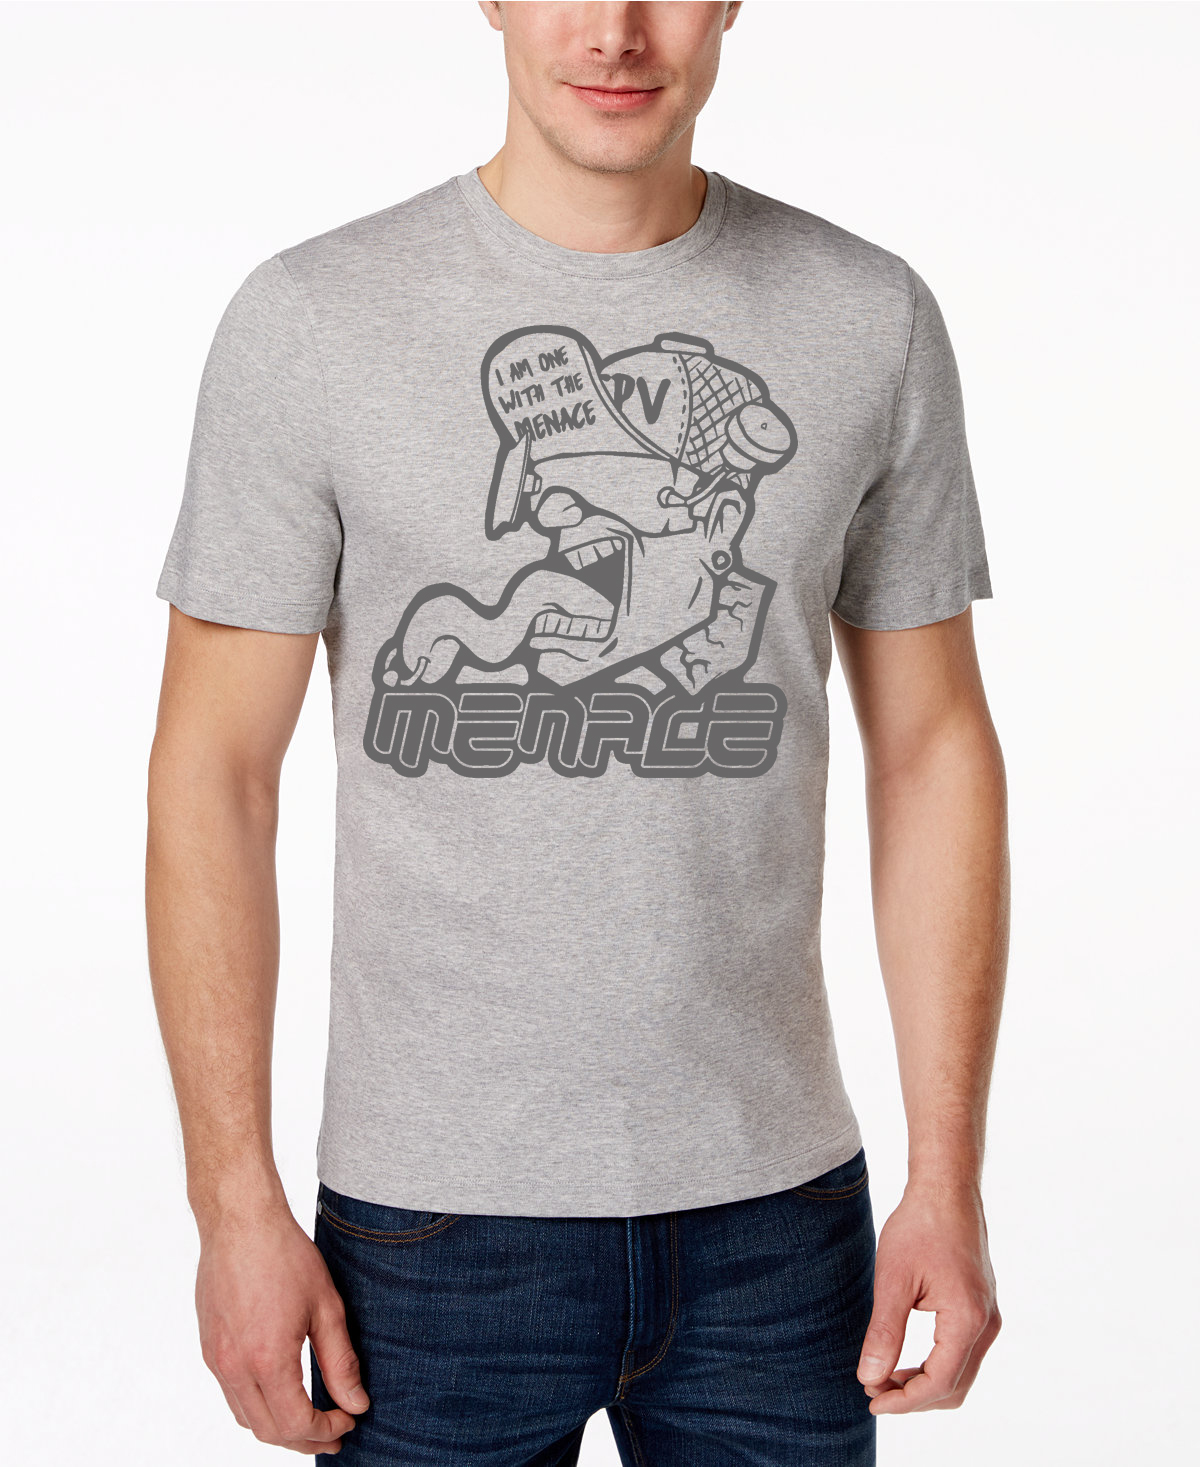 Menace Dude T-shirt - Menace RC